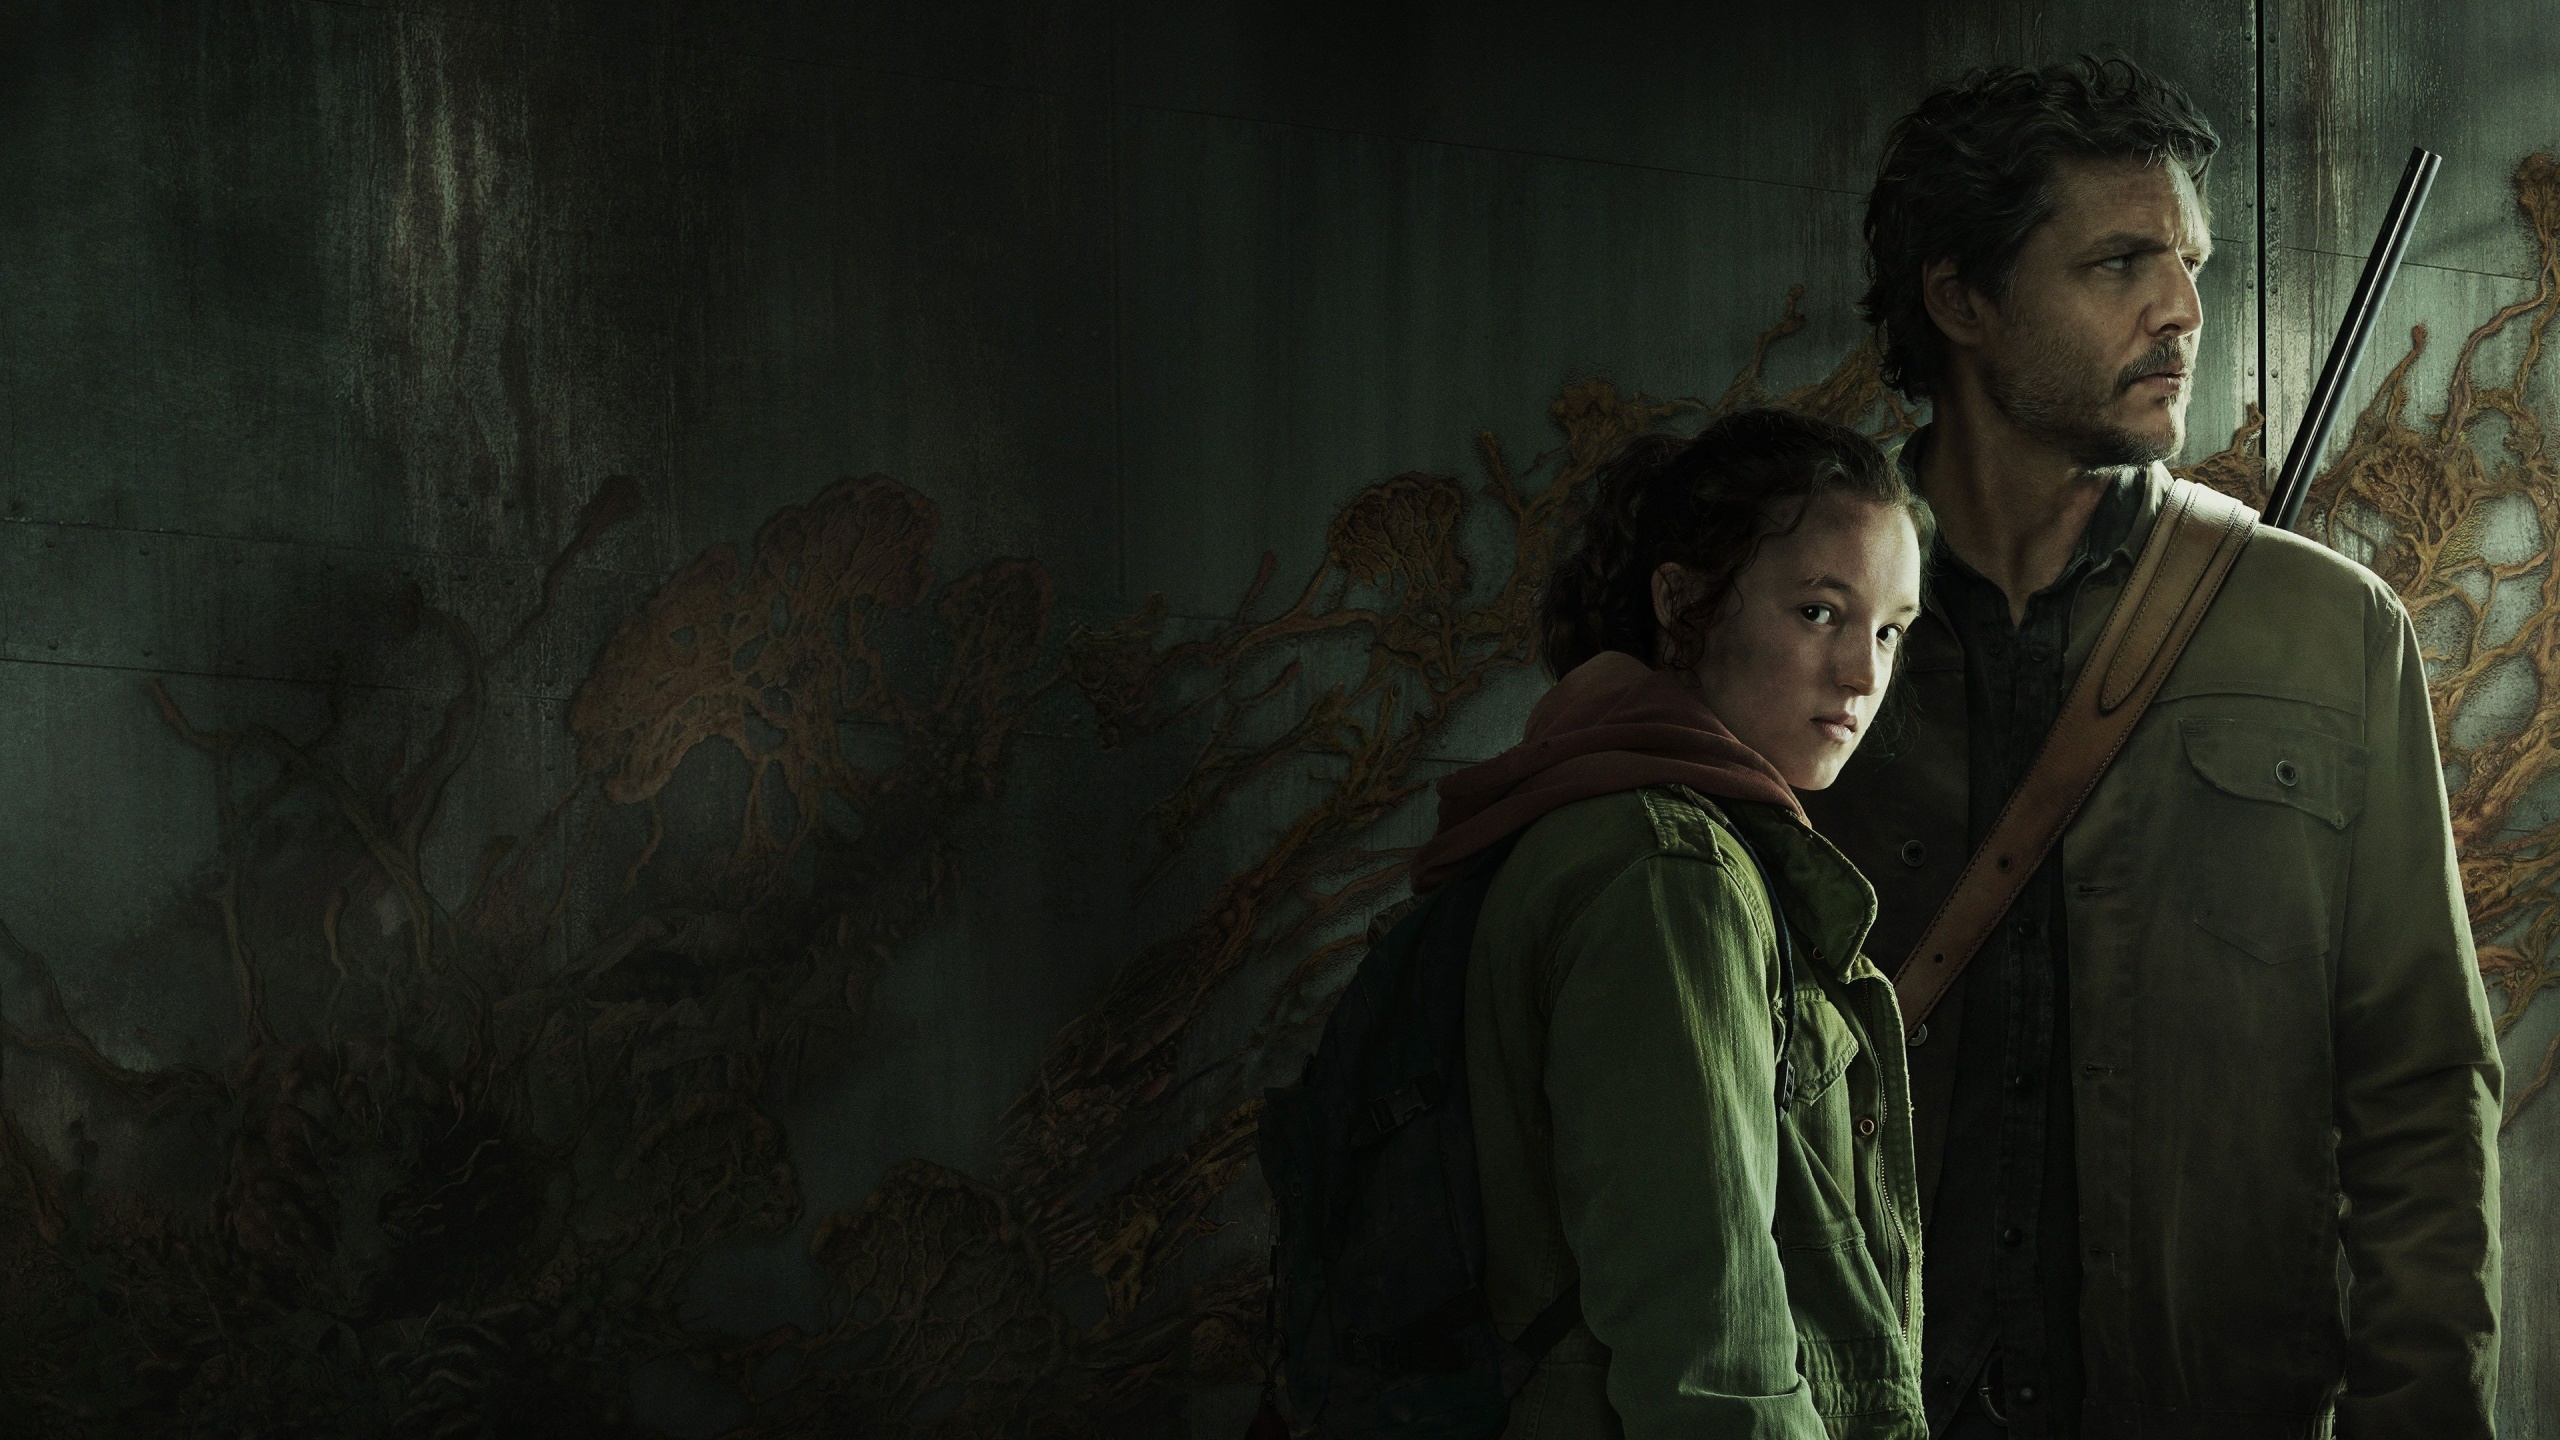 The Last of Us Ellie & Joel Wallpapers - The Last of Us Wallpapers